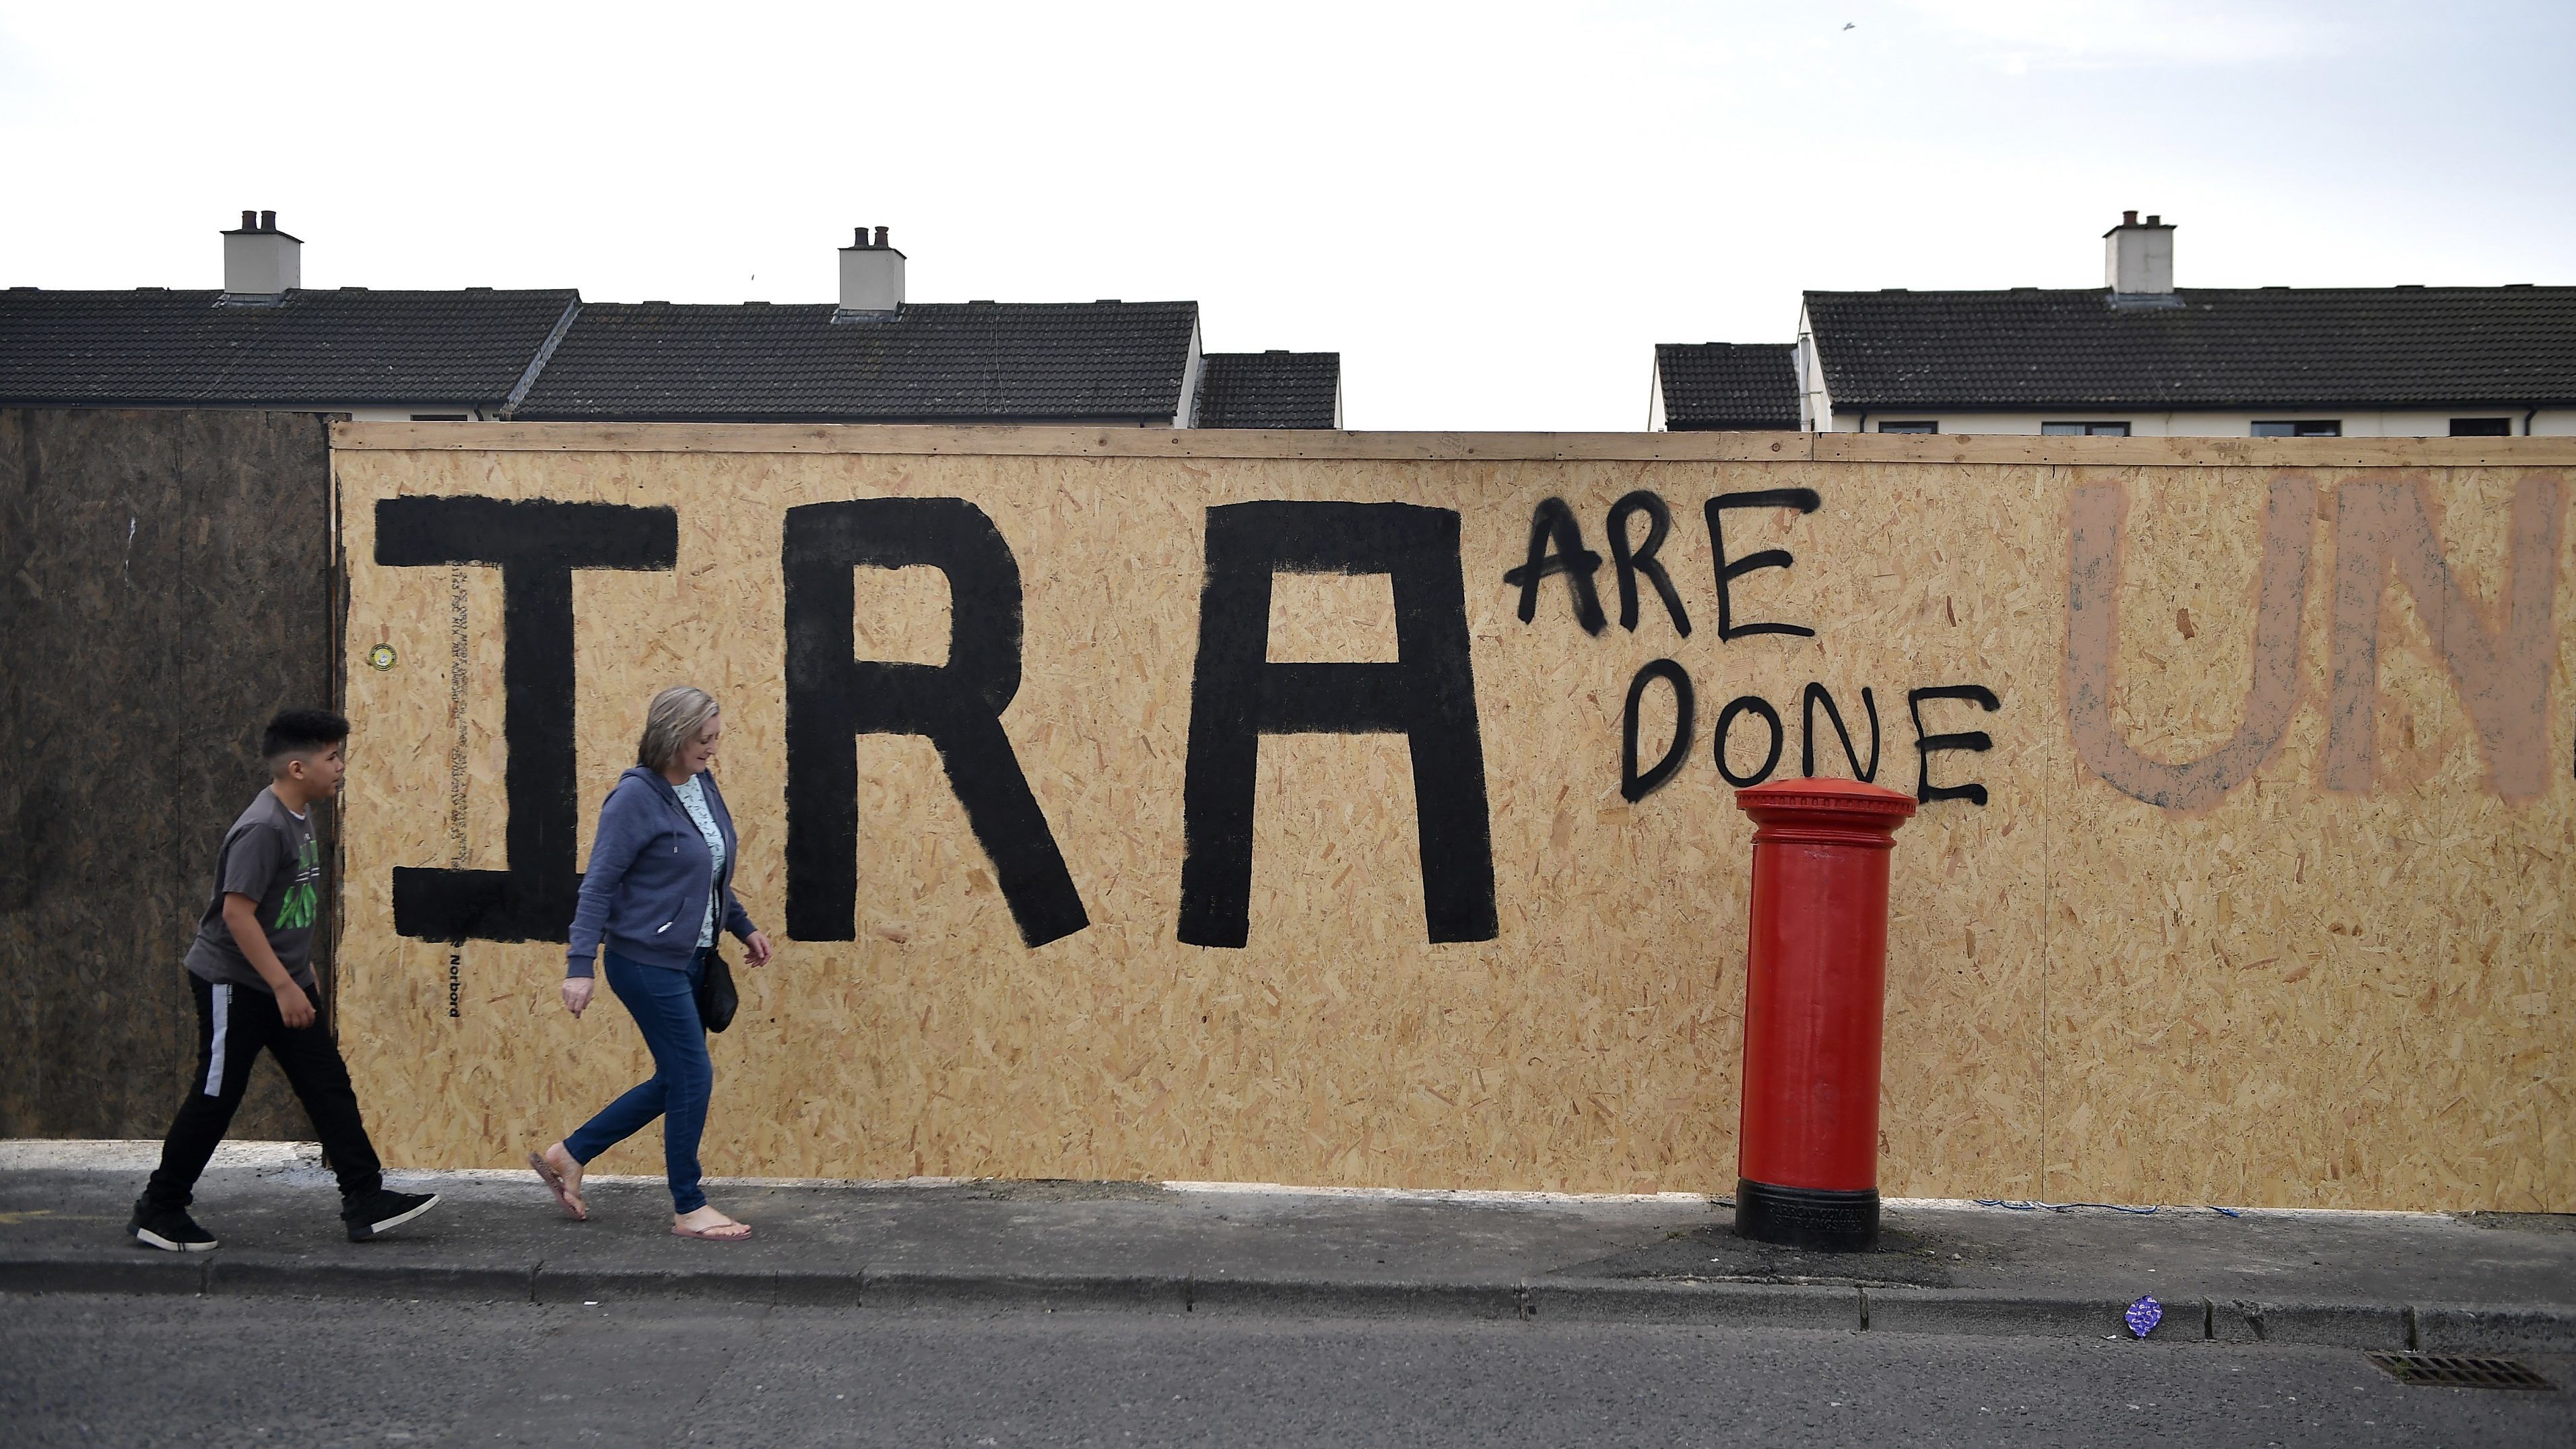 Újra egy terrorszervezet miatt retteghetnek Észak-Írországban